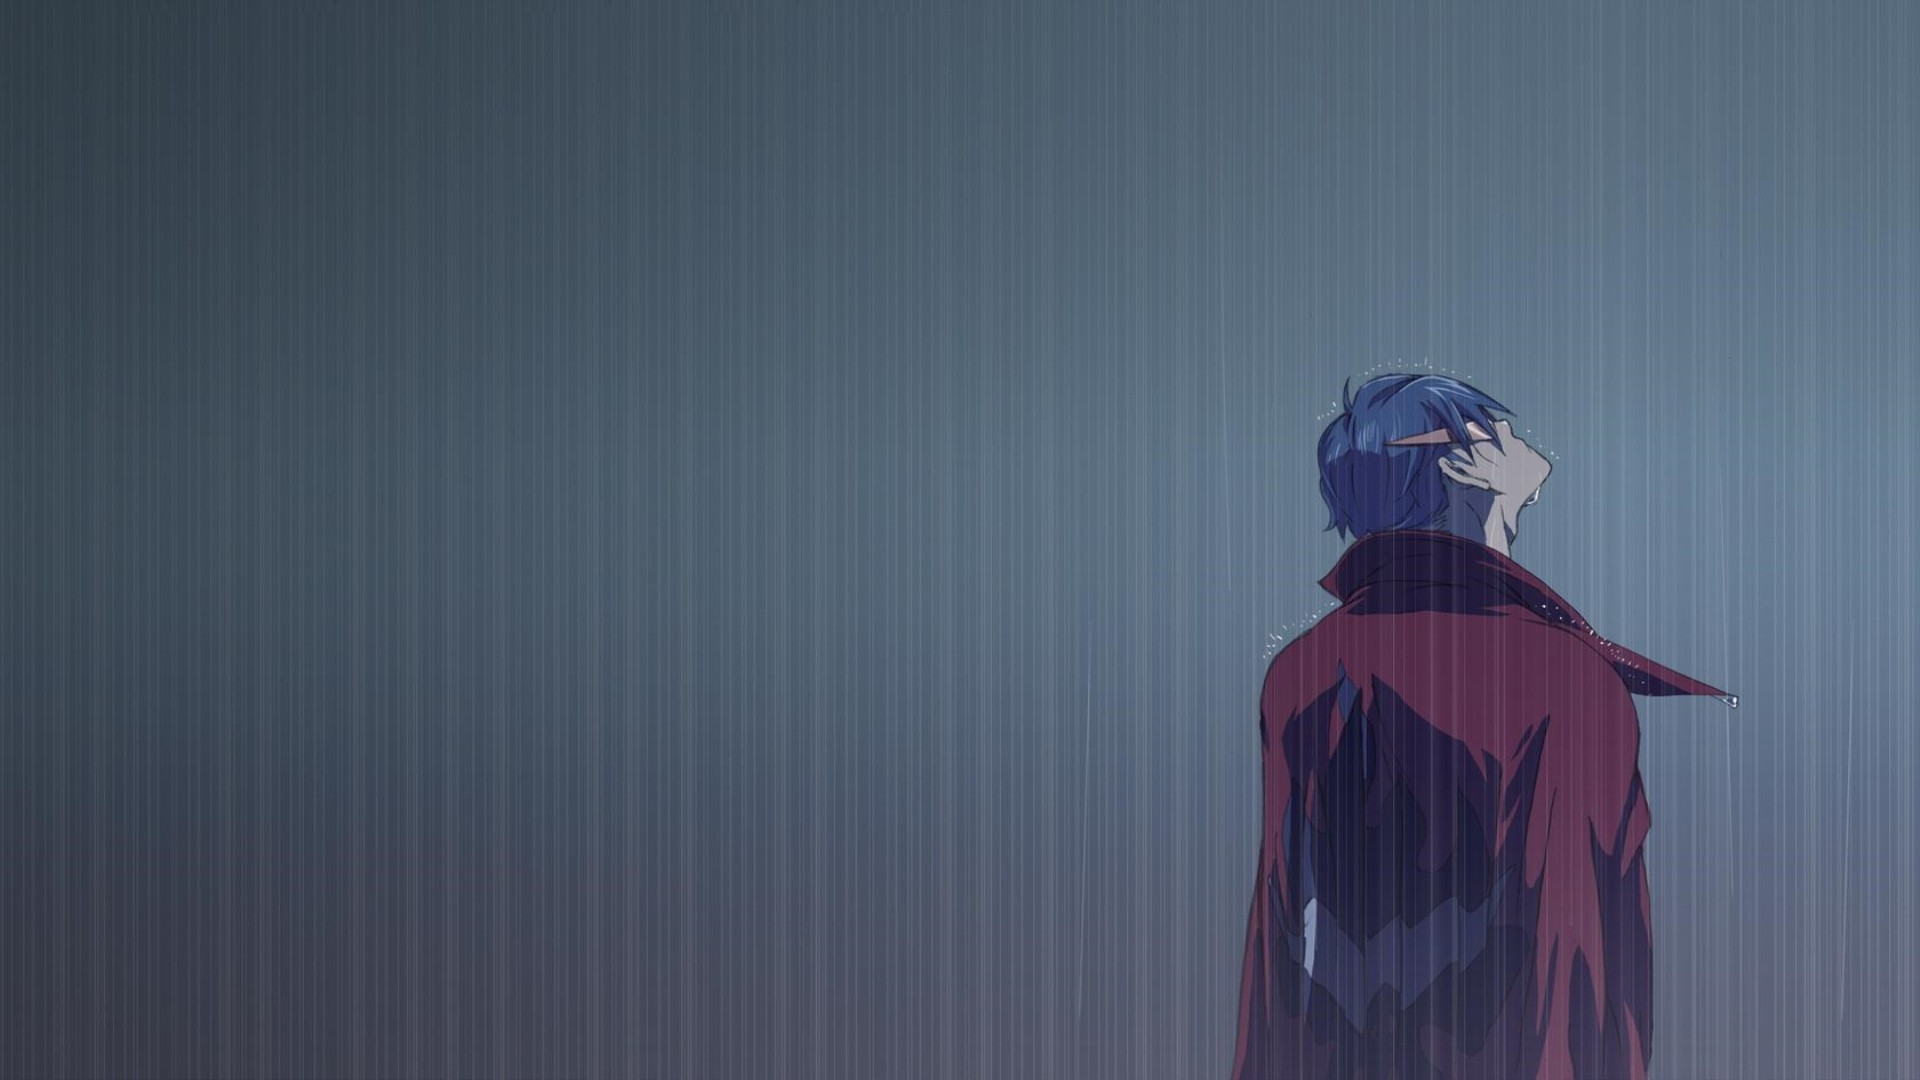 Wallpaper, anime, rain, blue, Tengen Toppa Gurren Lagann, Kamina, color, darkness, screenshot, computer wallpaper 1920x1080